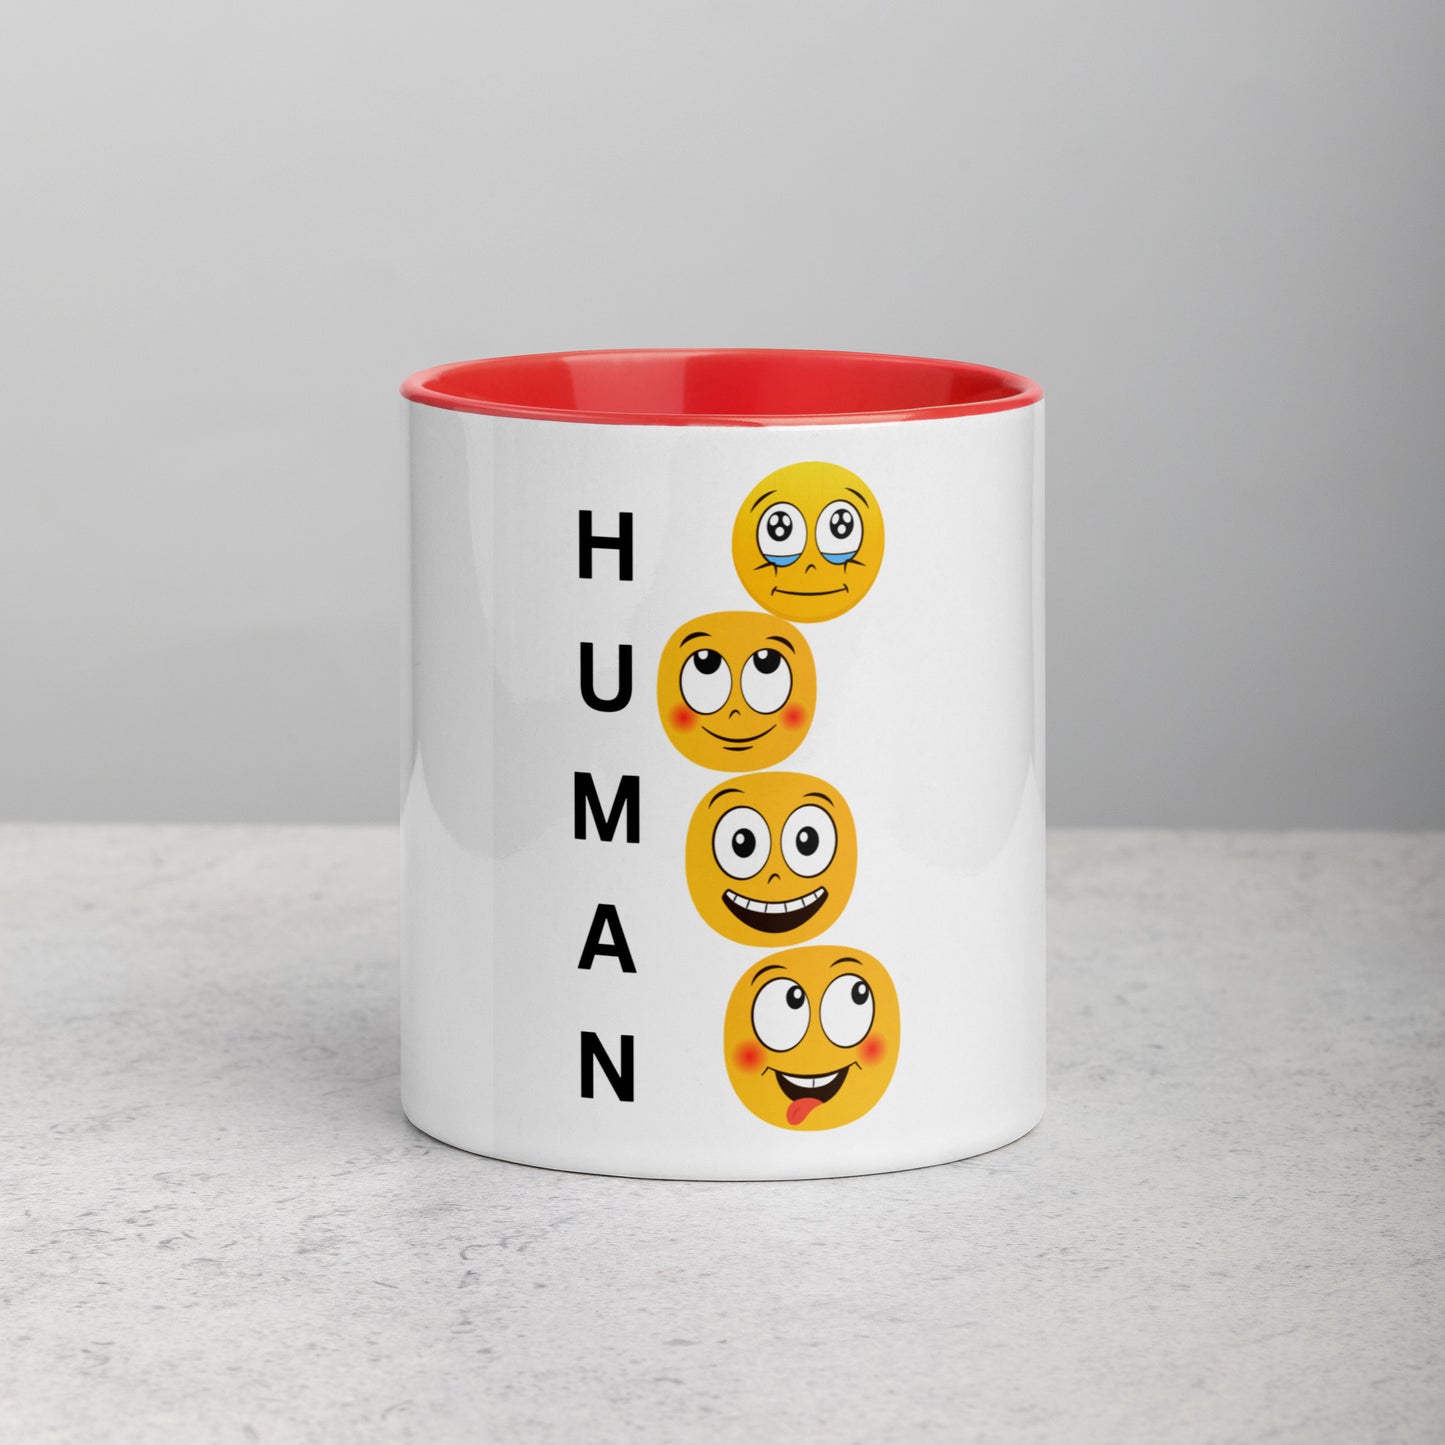 HUMAN - A Mug